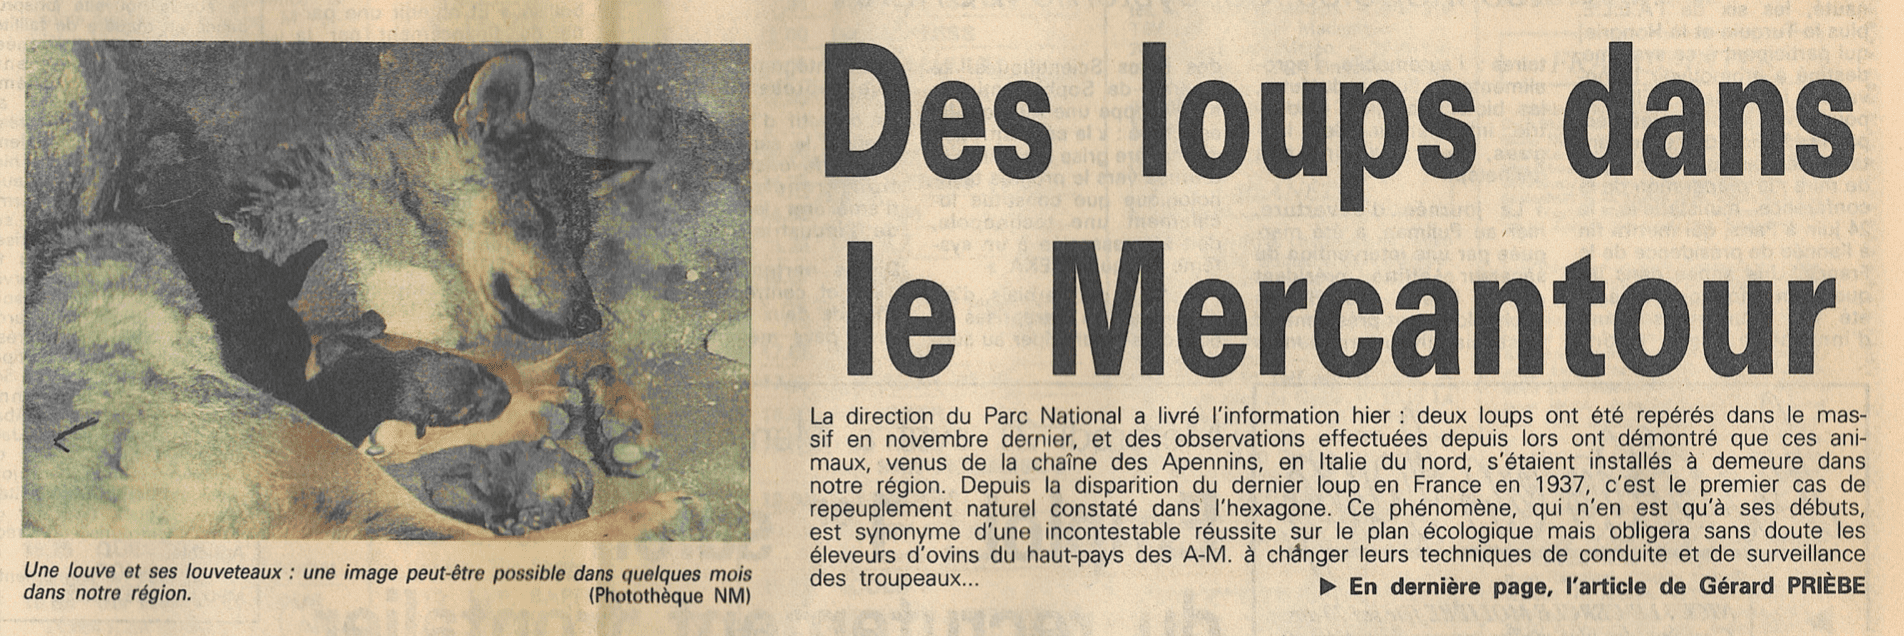 Avril 1993 : Nice Matin informe pour la première fois du retour du loup